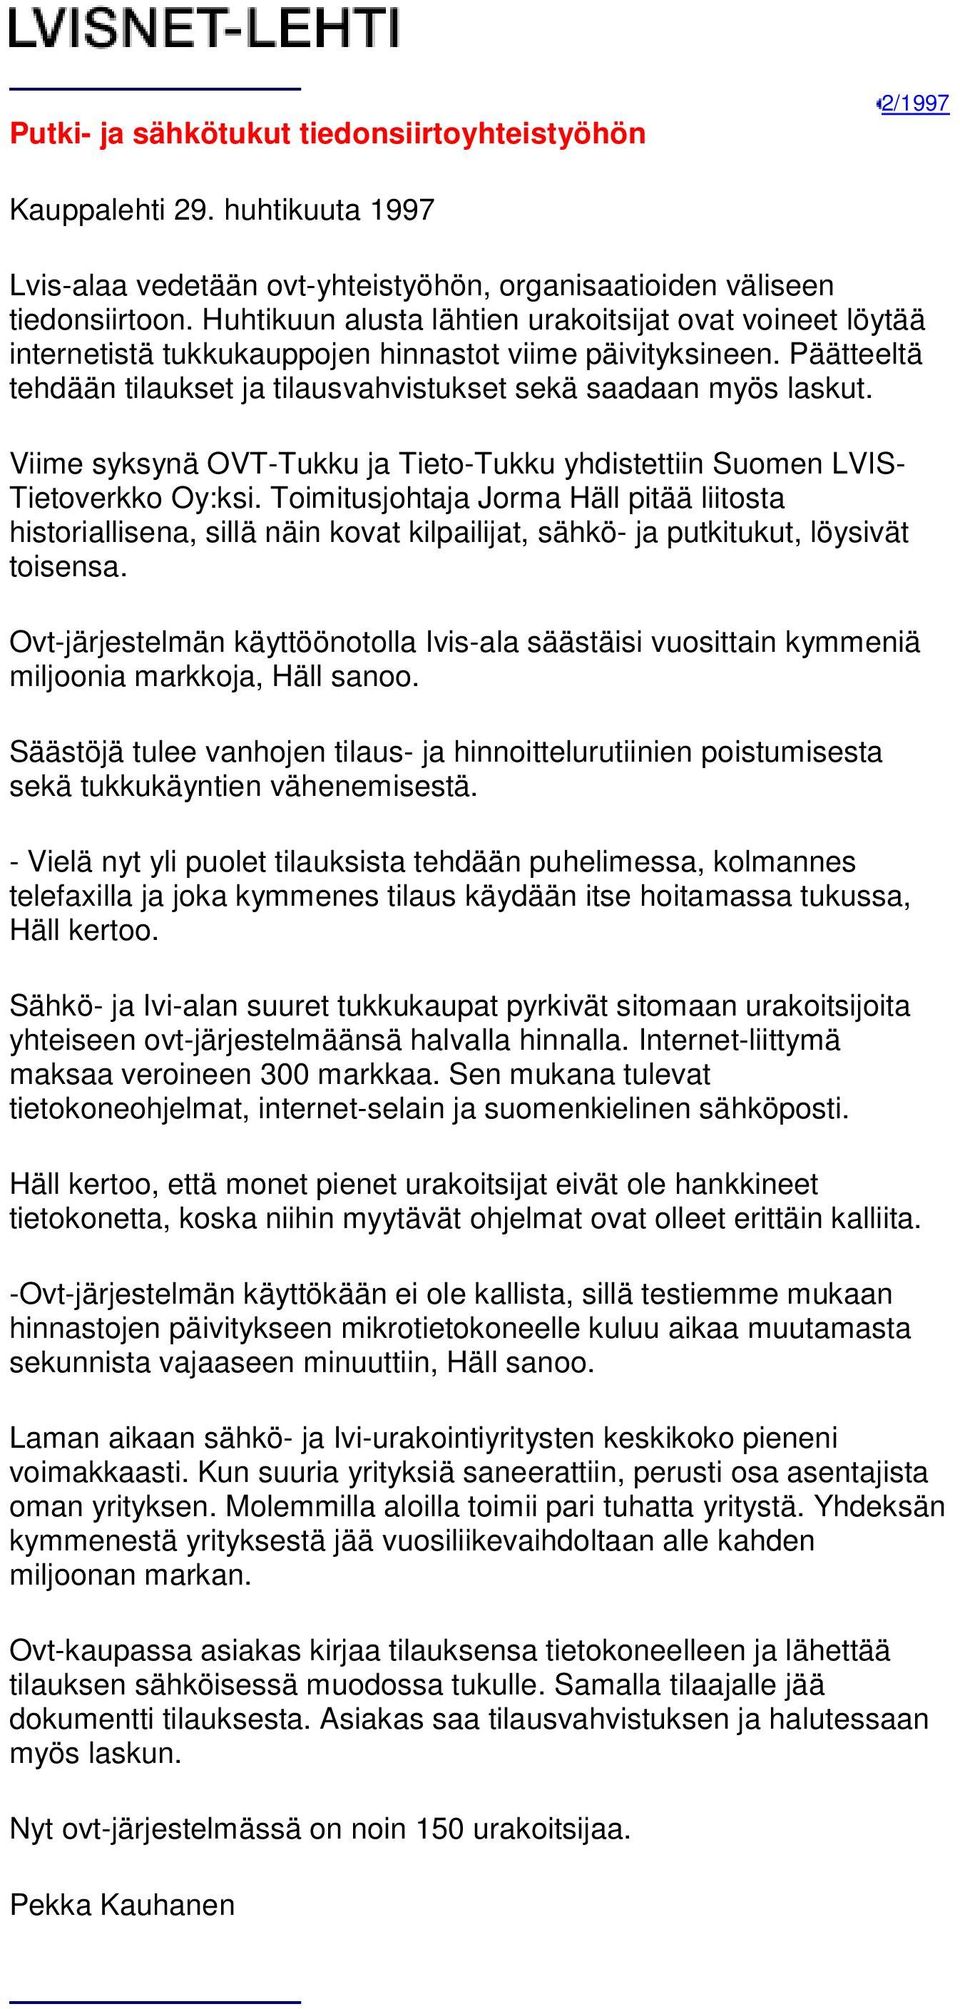 Viime syksynä OVT-Tukku ja Tieto-Tukku yhdistettiin Suomen LVIS- Tietoverkko Oy:ksi.